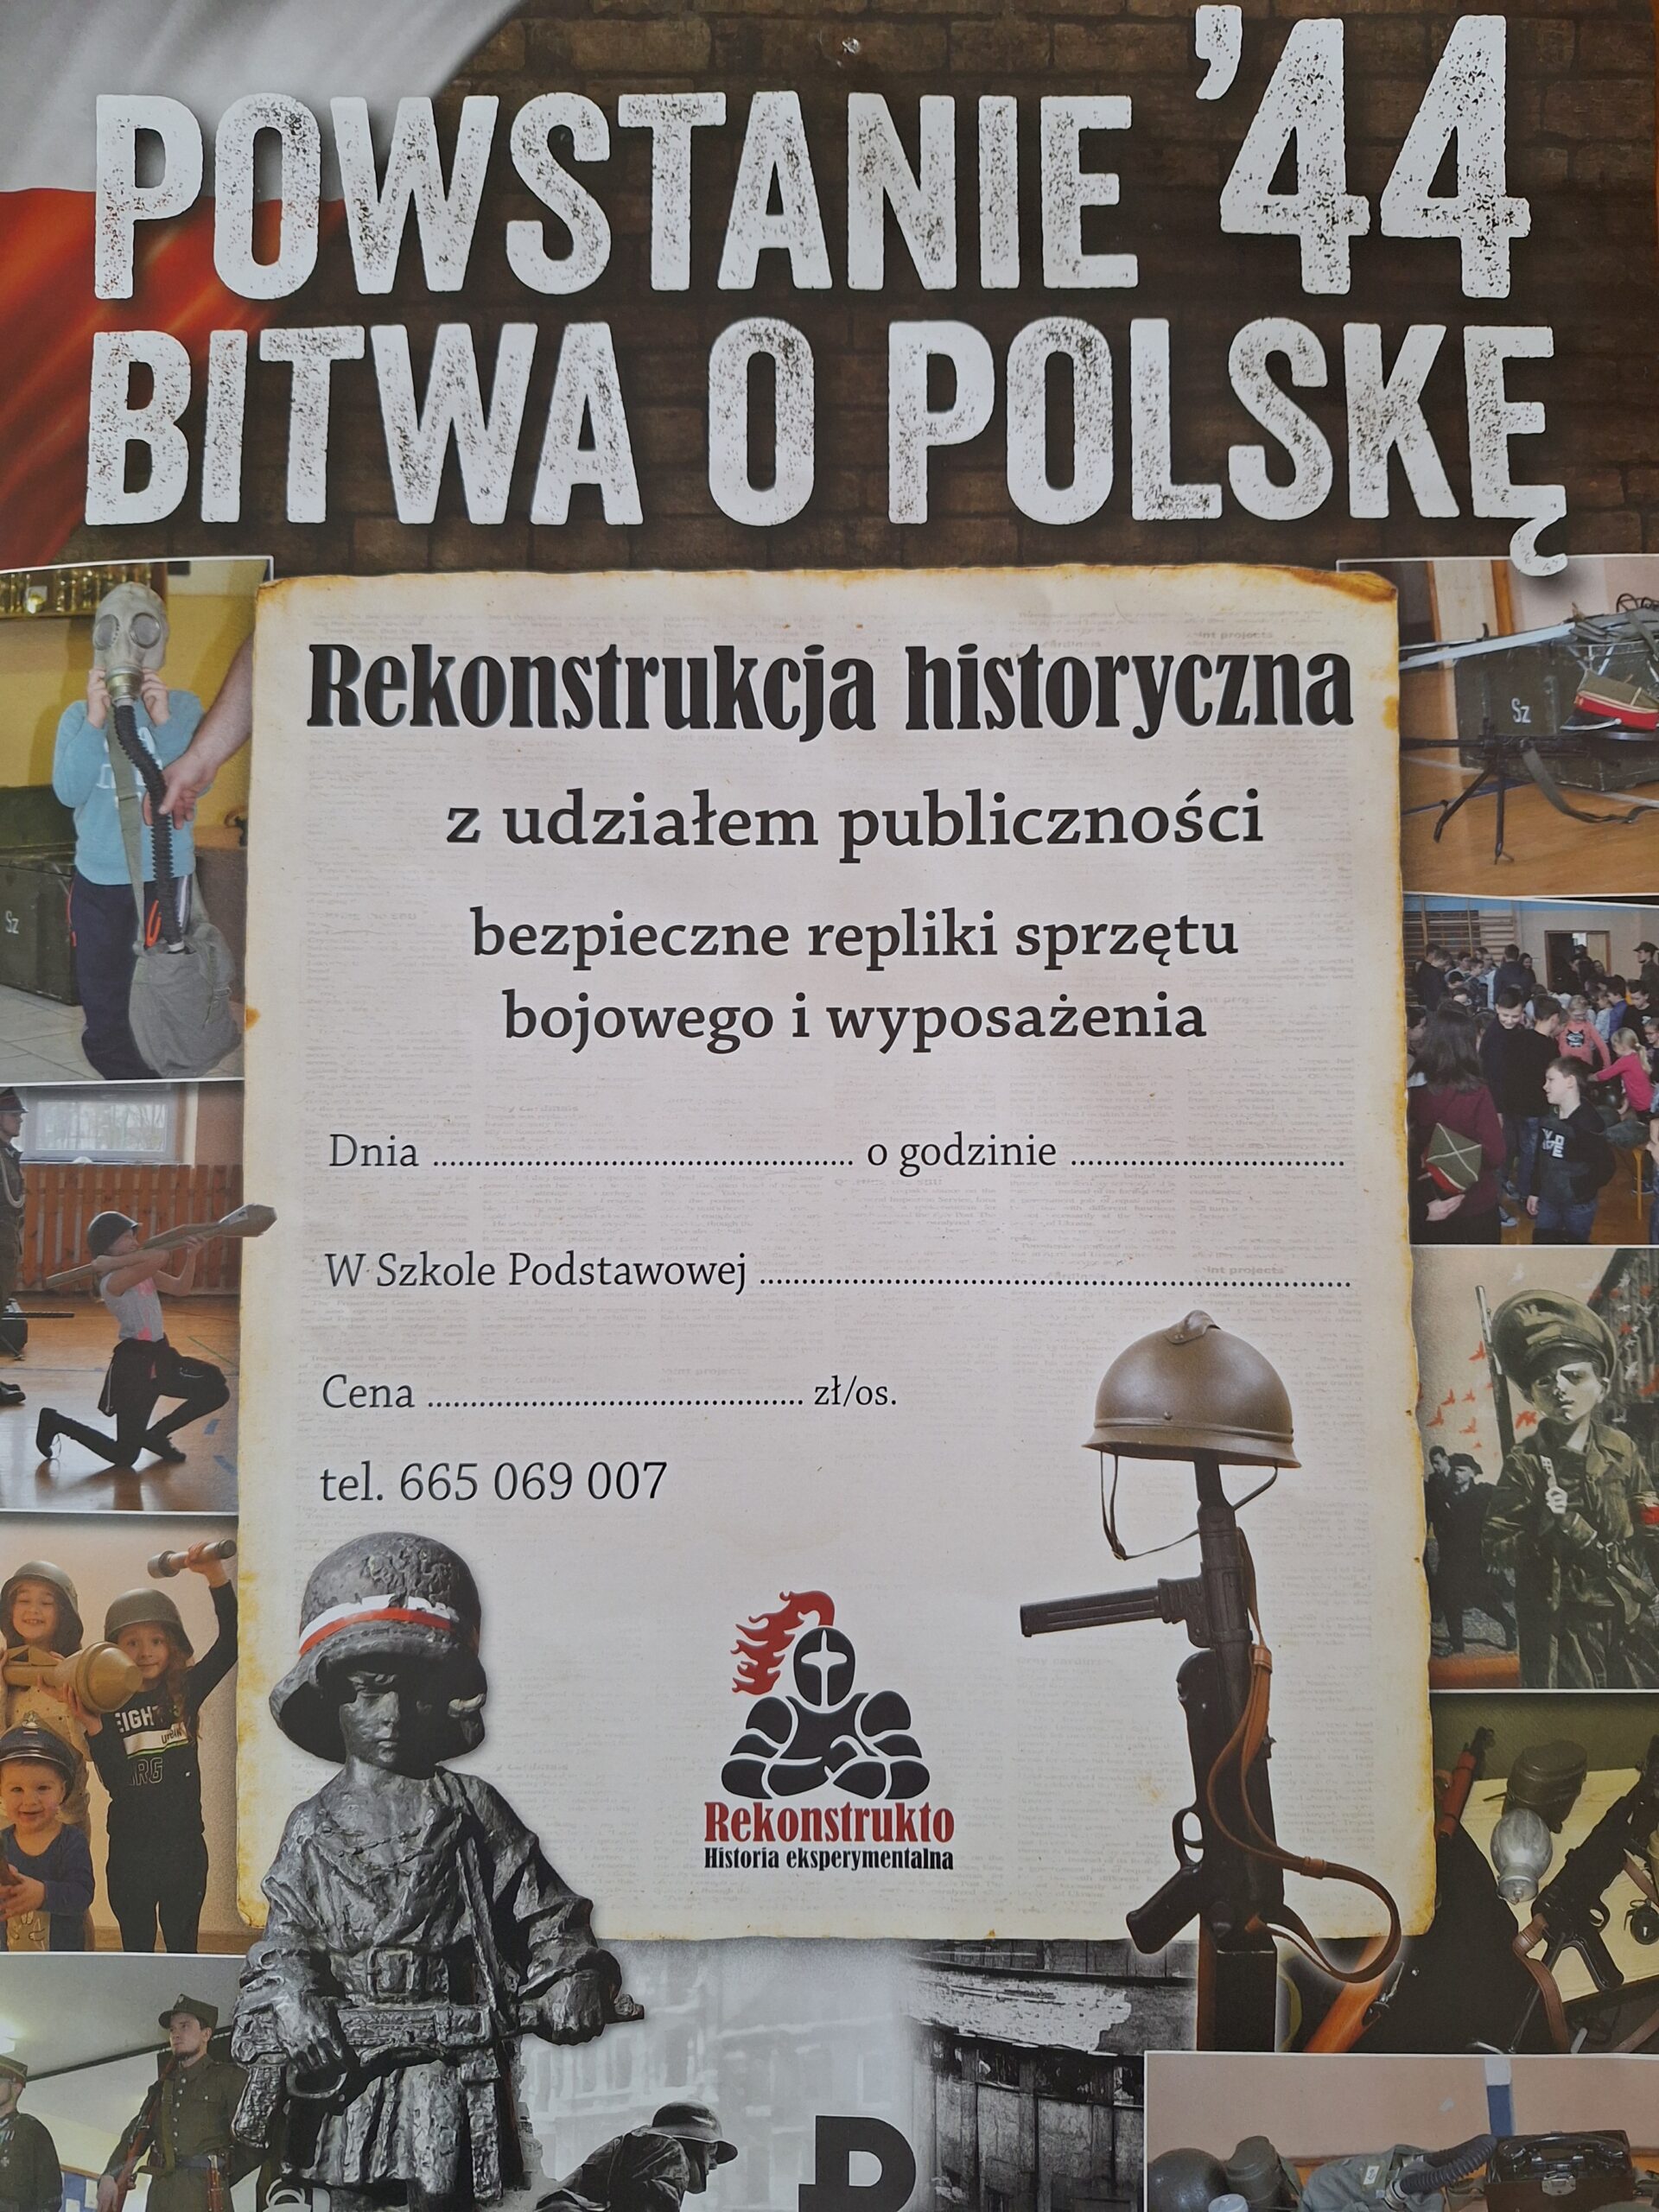 Rekonstrukcja historyczna „Powstanie 44. Bitwa o Polskę”